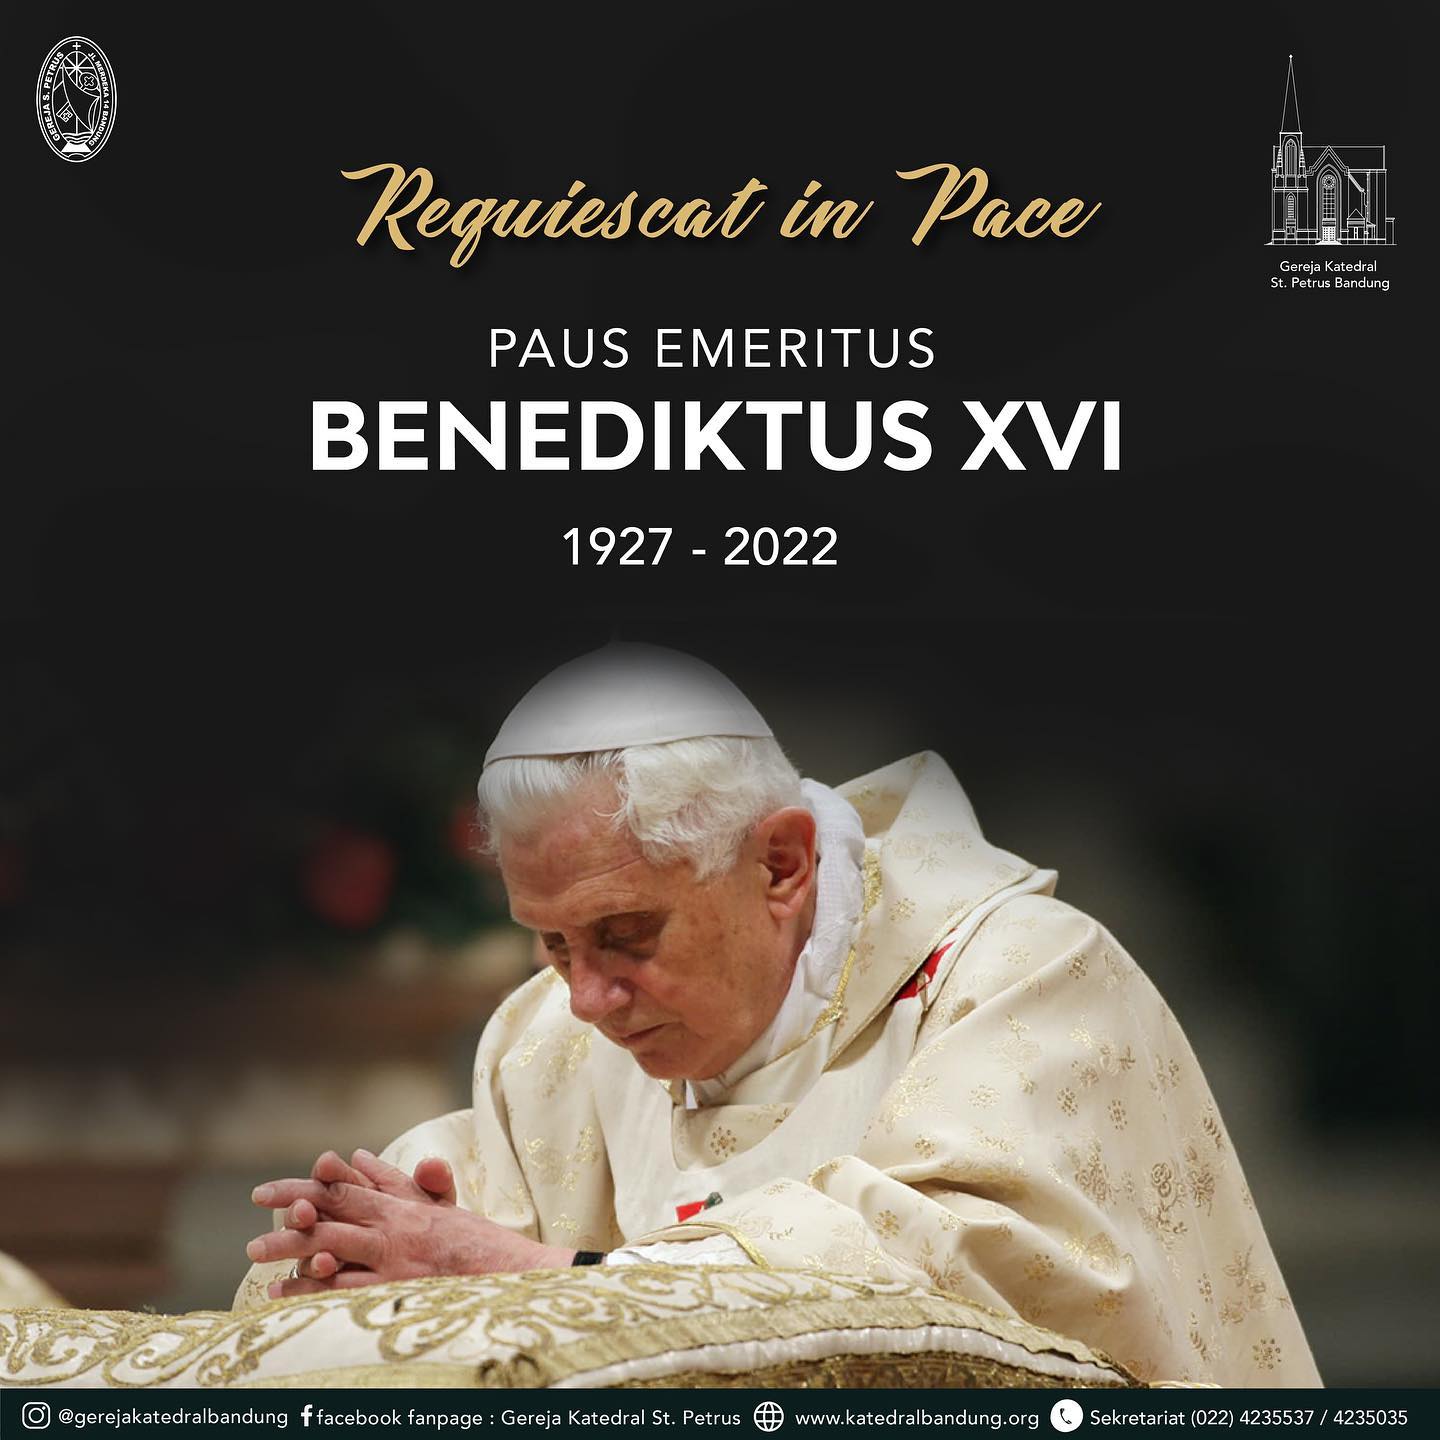 Requiescat in Pace
Paus Emeritus Benediktus XVI
.
Paus Emeritus Benediktus XVI meninggal dunia di usia 95 tahun pada Sabtu, 31 Desember 2022. Beliau meninggal pukul 09.34 waktu setempat (15.34 WIB) di Biara Mater Ecclesia, Vatikan.
.
Marilah kita berdoa.